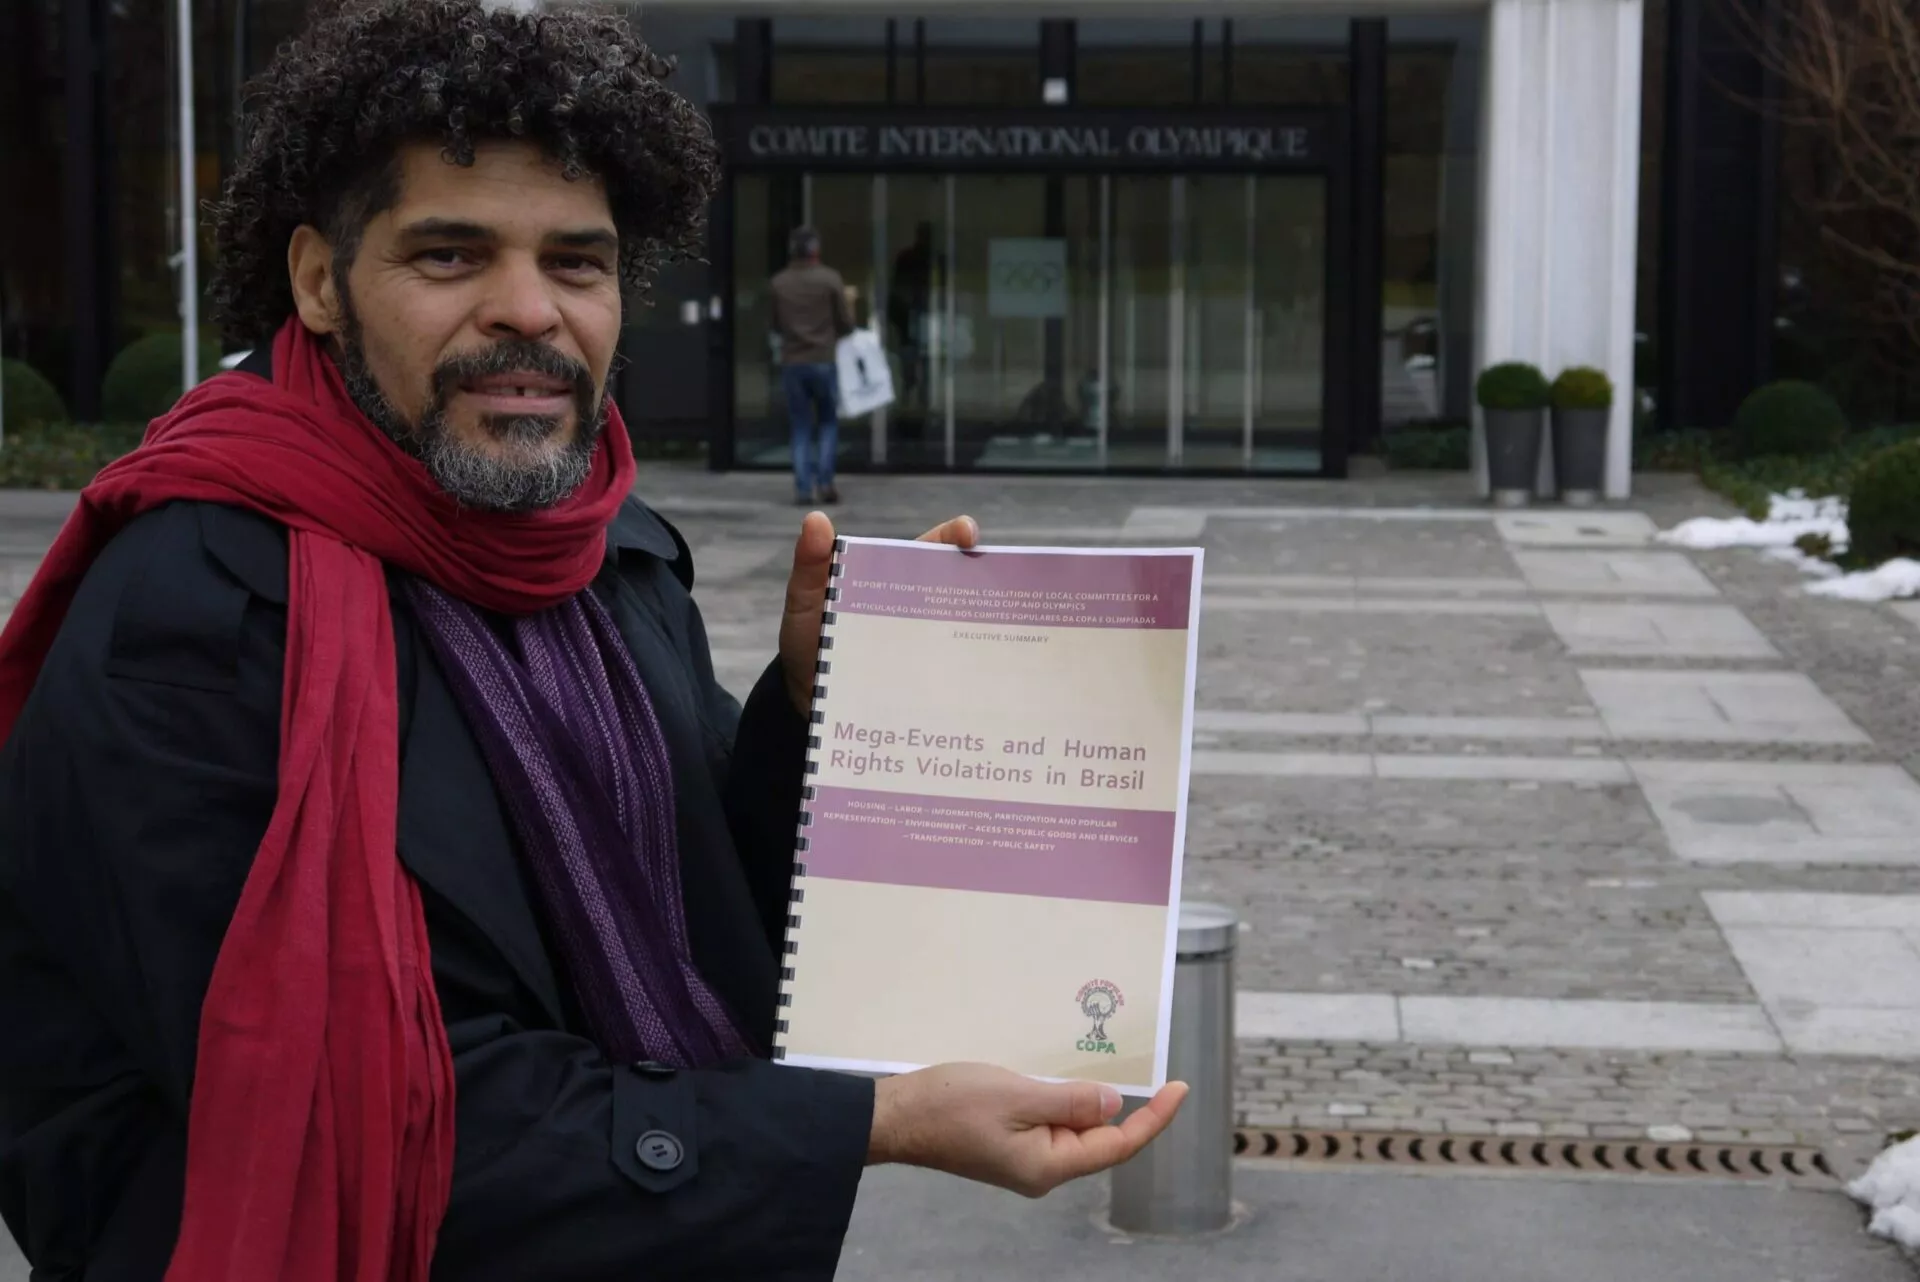 Argemiro vor dem Eingang zum Internationalen Olympischen Komitee. Er hält einen Bericht mit dem Titel: Mega-Events and Human Rights Violations in Brasil.